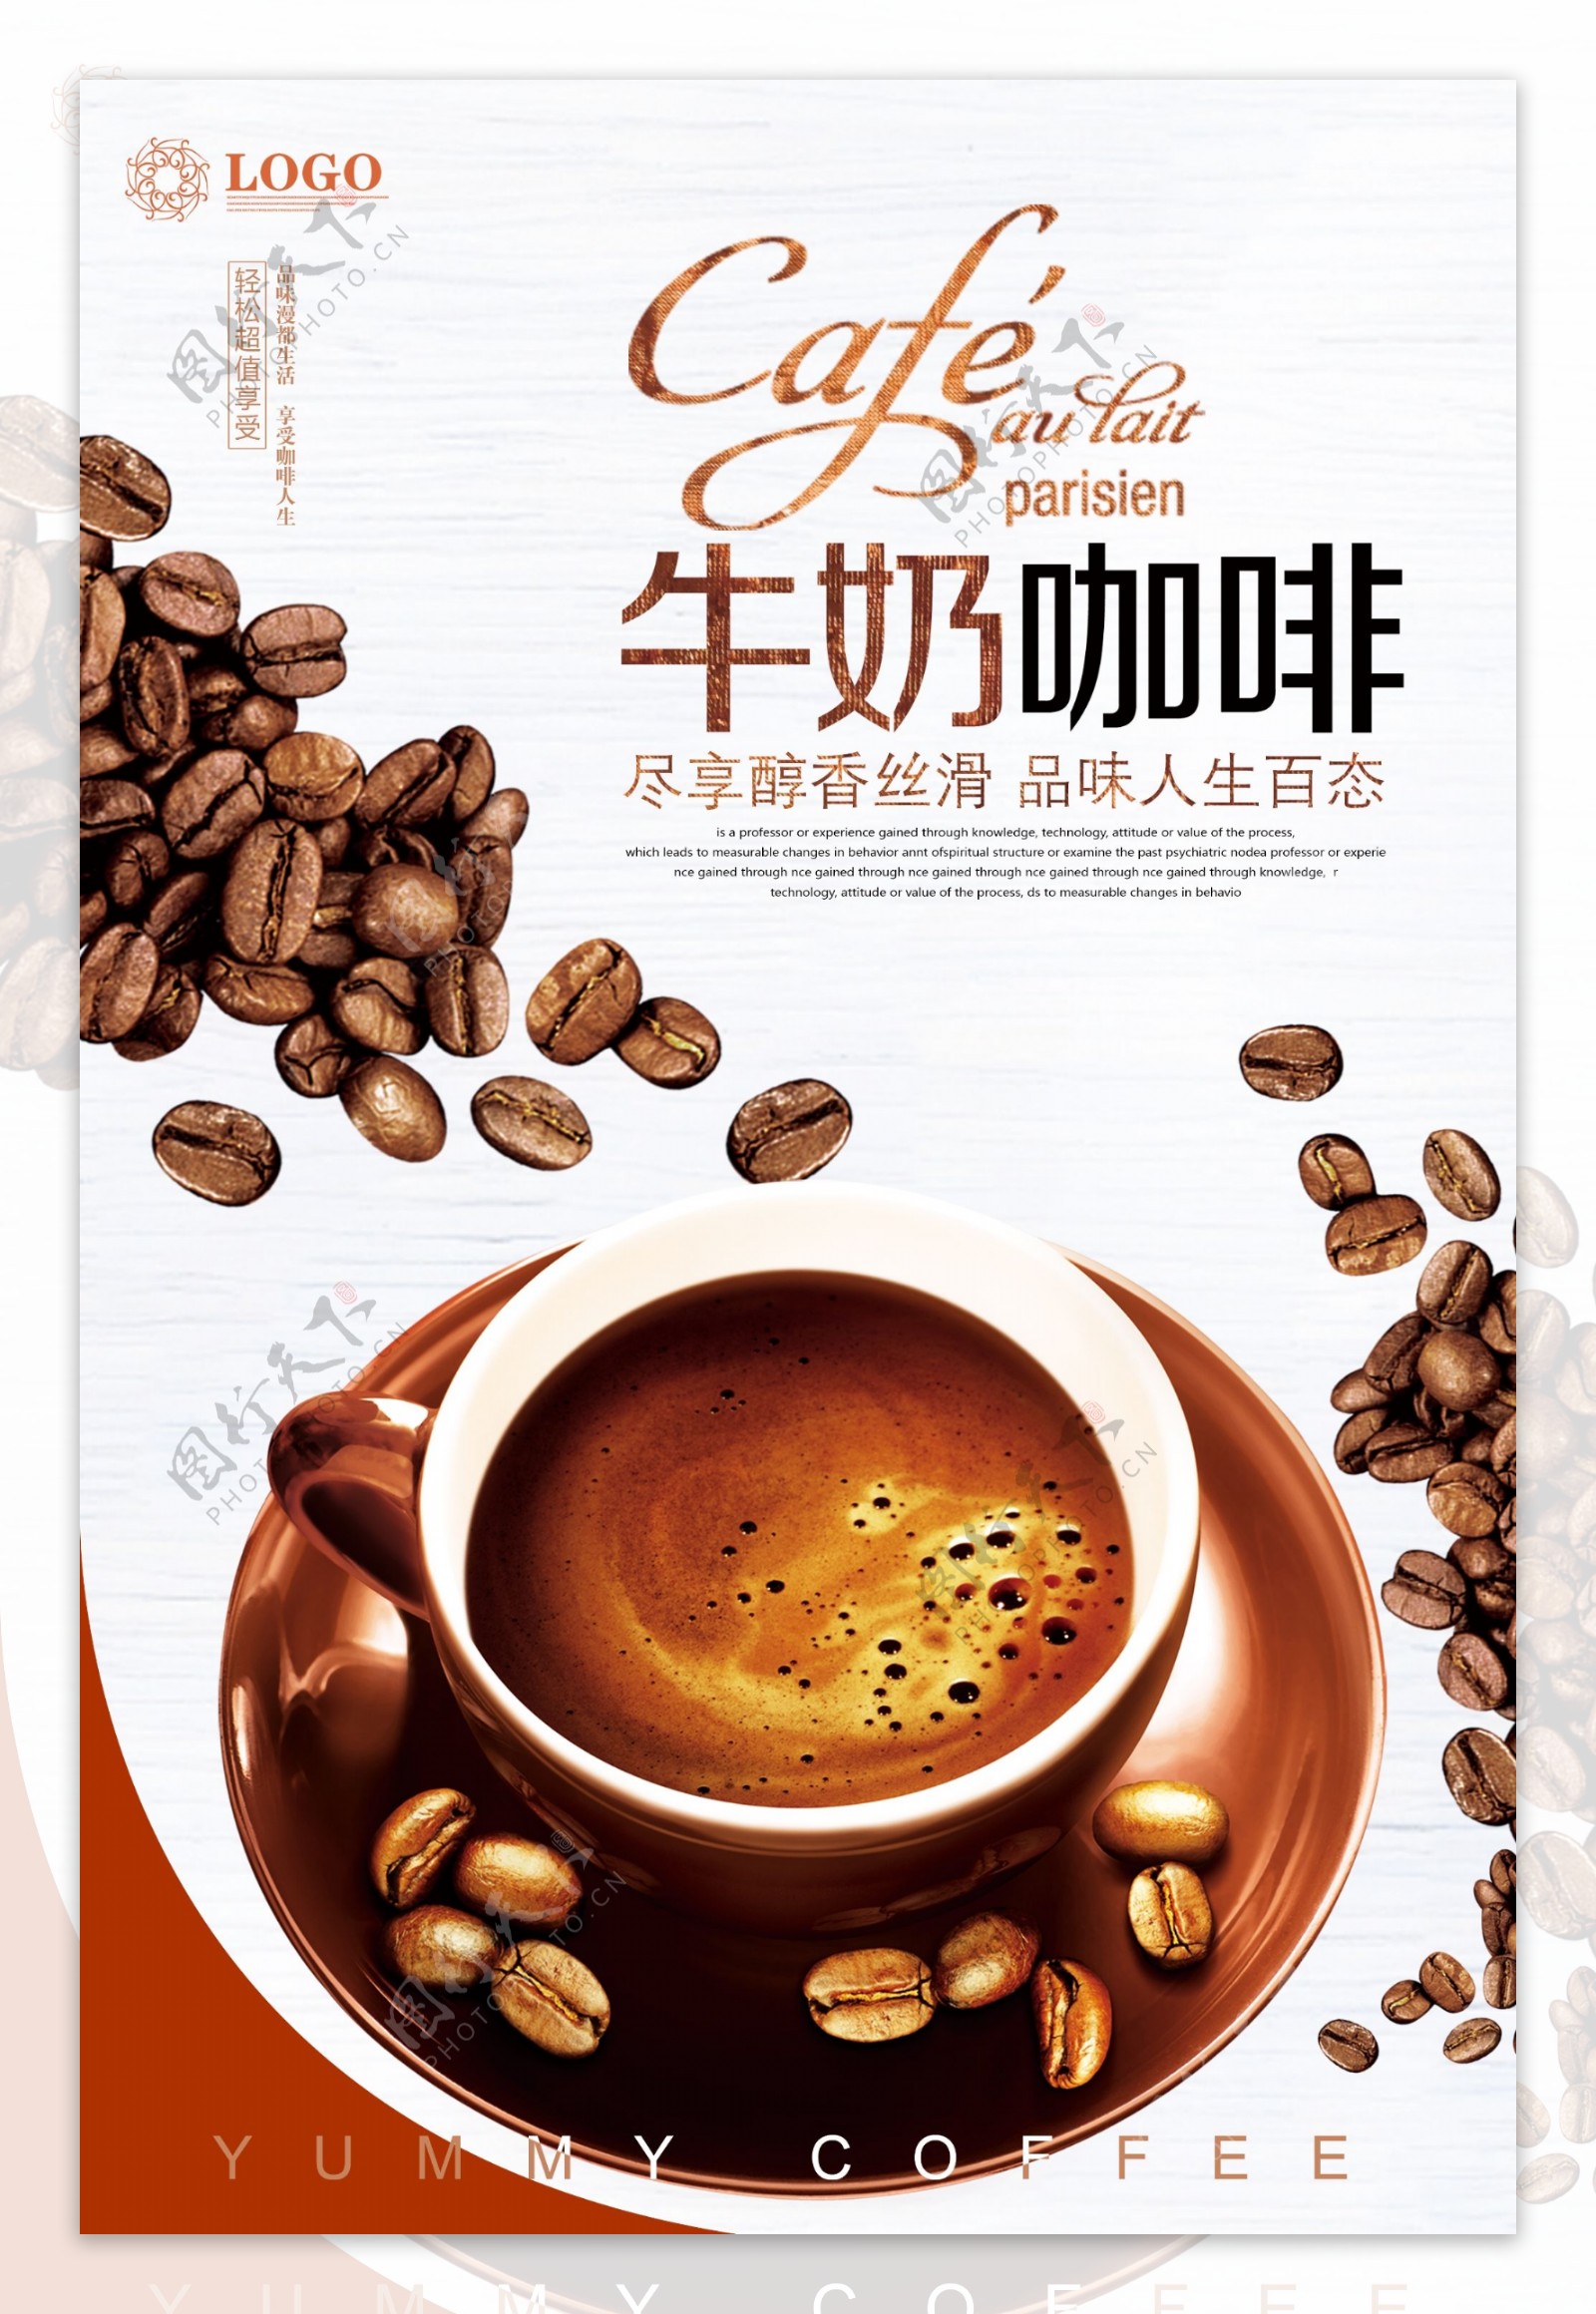 简约创意咖啡宣传海报设计.psd